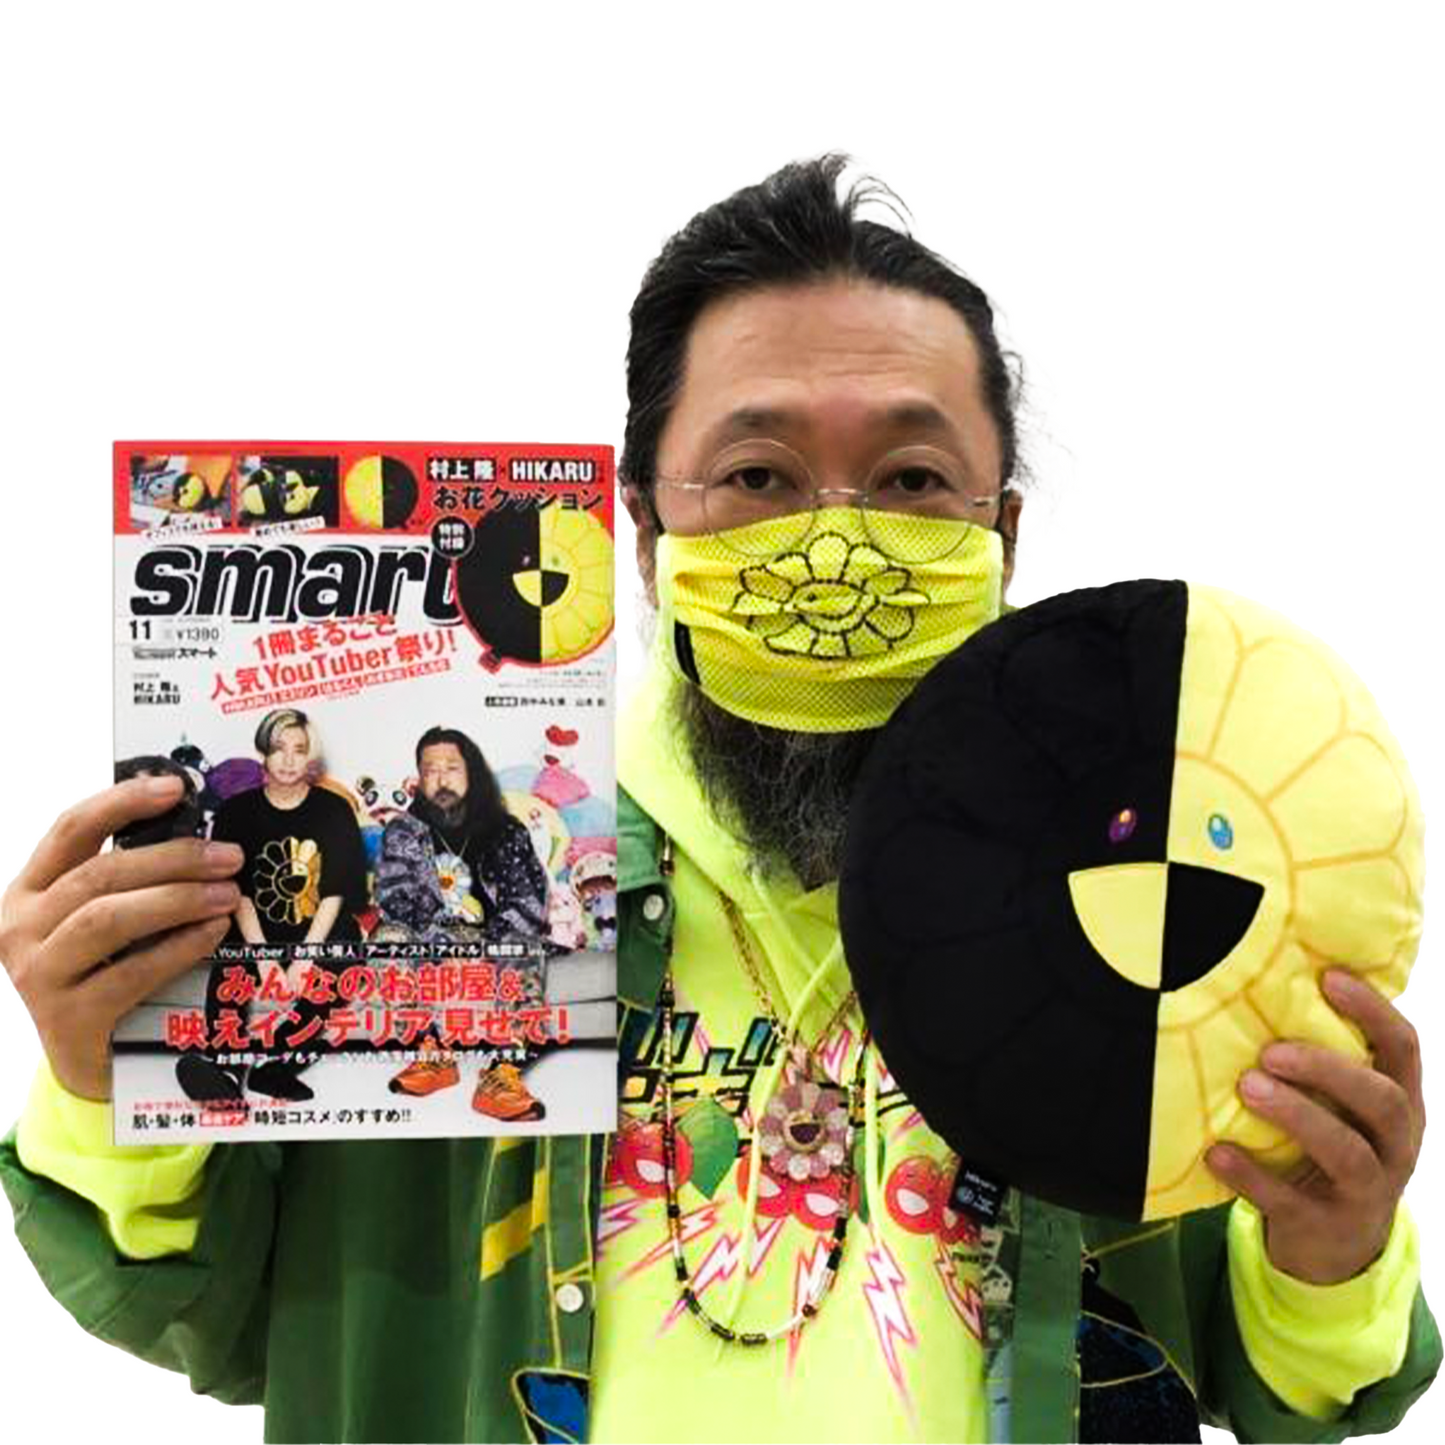 Takashi Murakami x Hikaru x Smart Magazine Flower Plush 30CM Black/Yellow